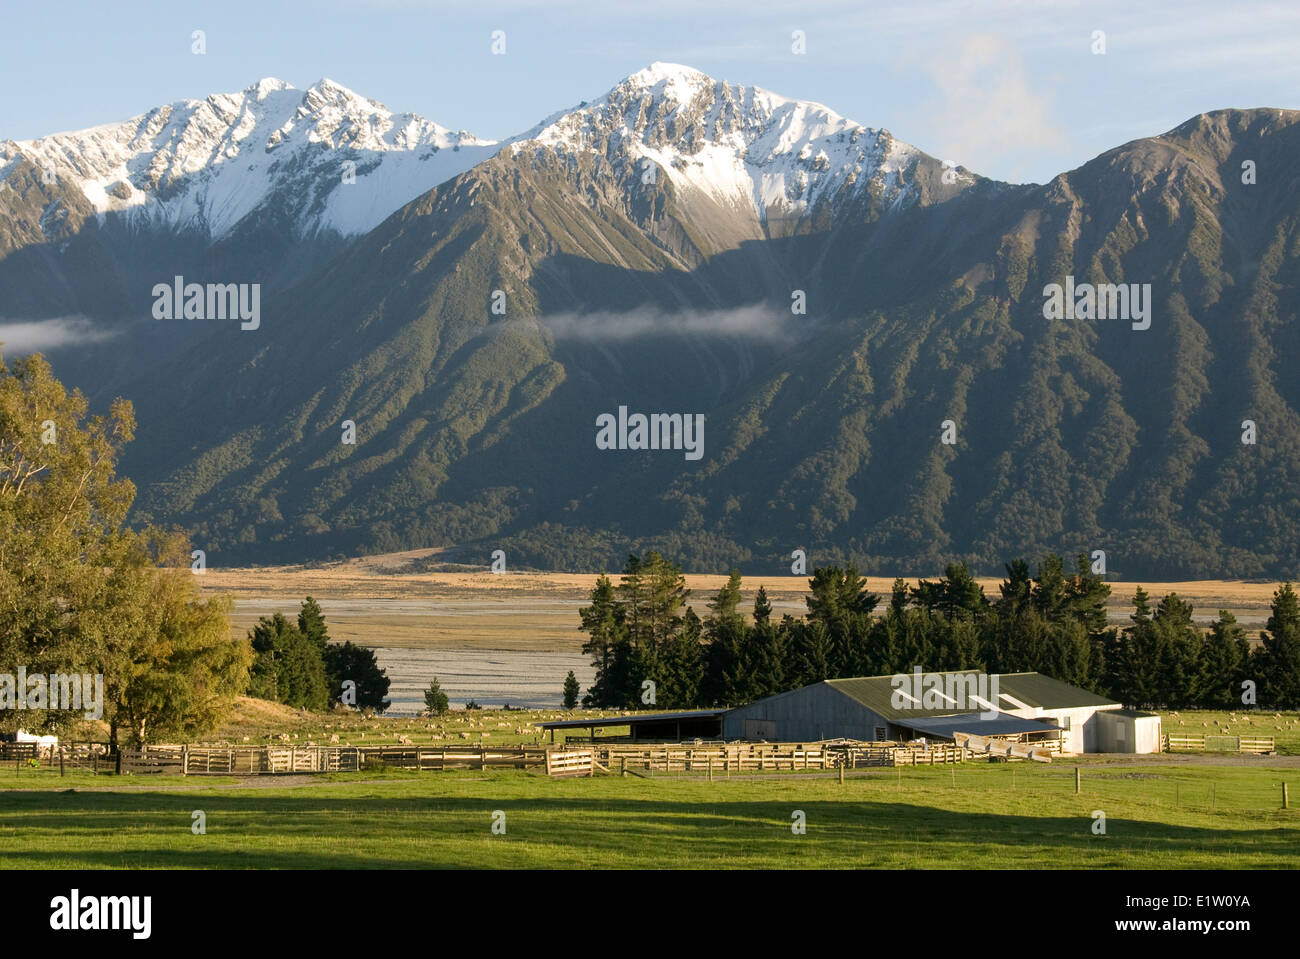 Los edificios de la granja, colinas y montañas cubiertas de nieve, Superior Rakaia Valle, Canterbury, Isla del Sur, Nueva Zelanda Foto de stock